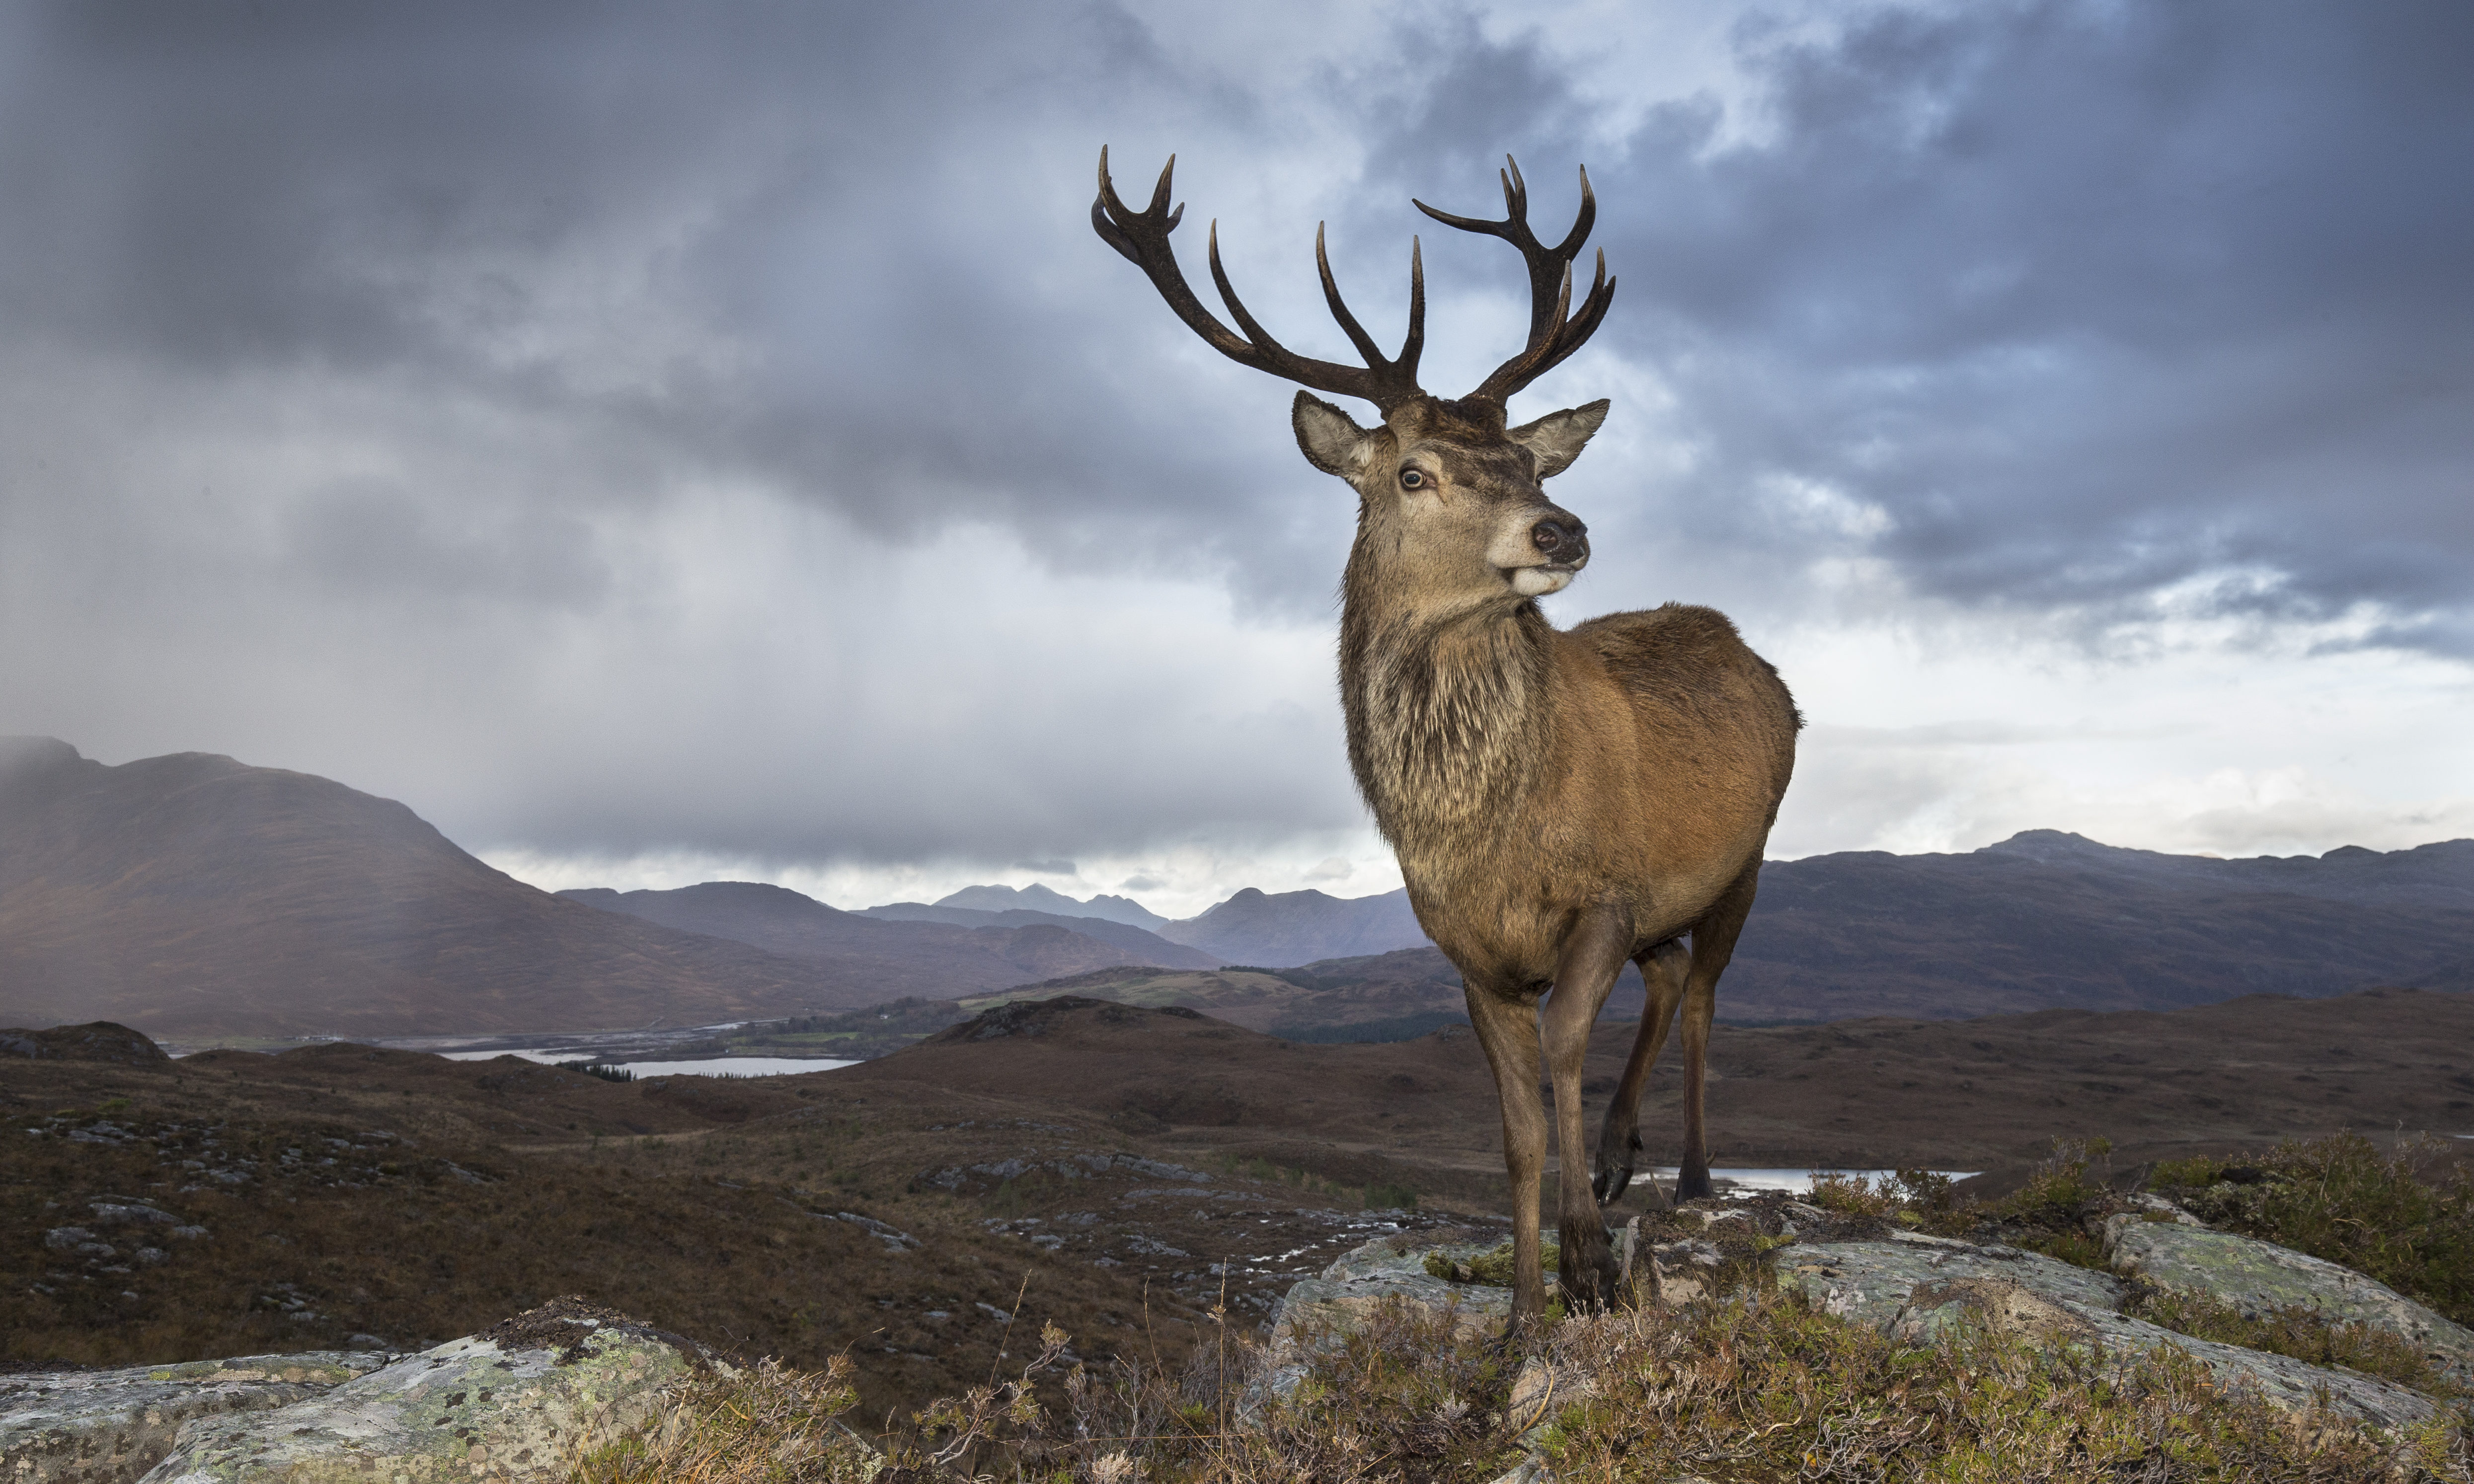 Red deer (Cervus elaphus) stag in west Highland landscape, Lochcarron, Wester Ross, Scotland @petercairns